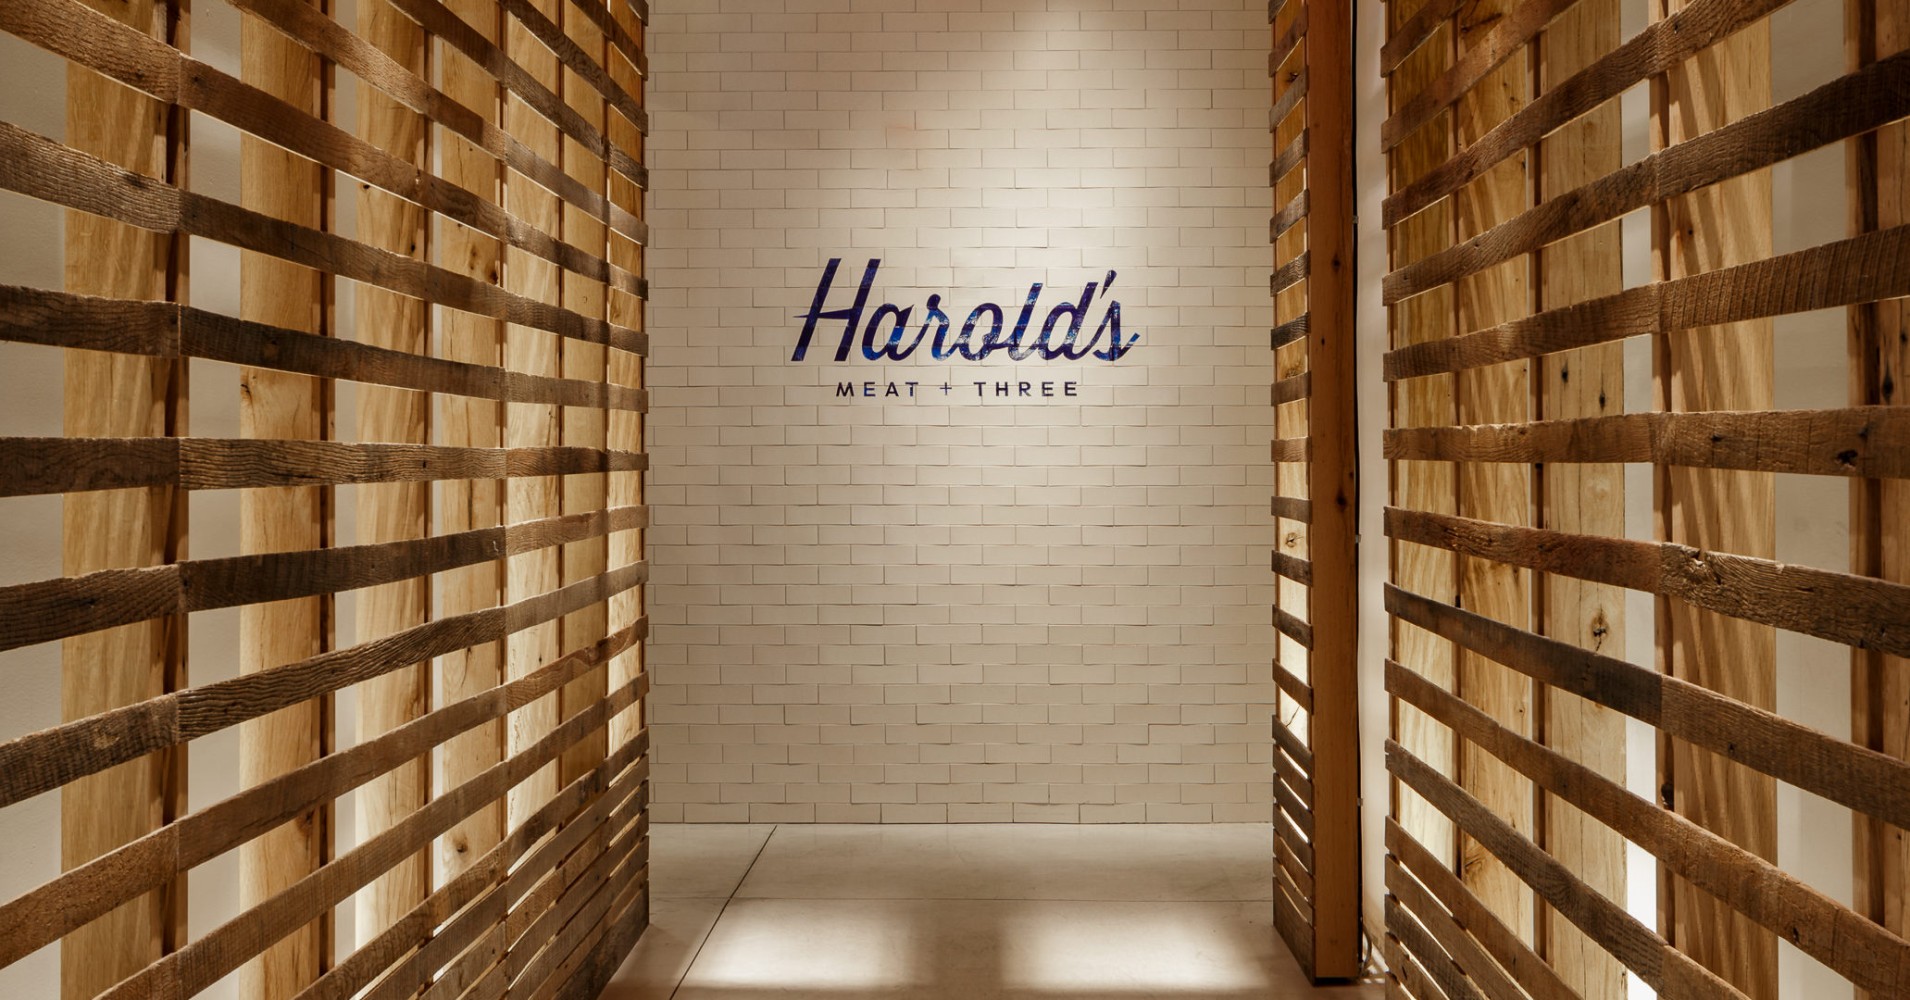 Harolds entrance-1